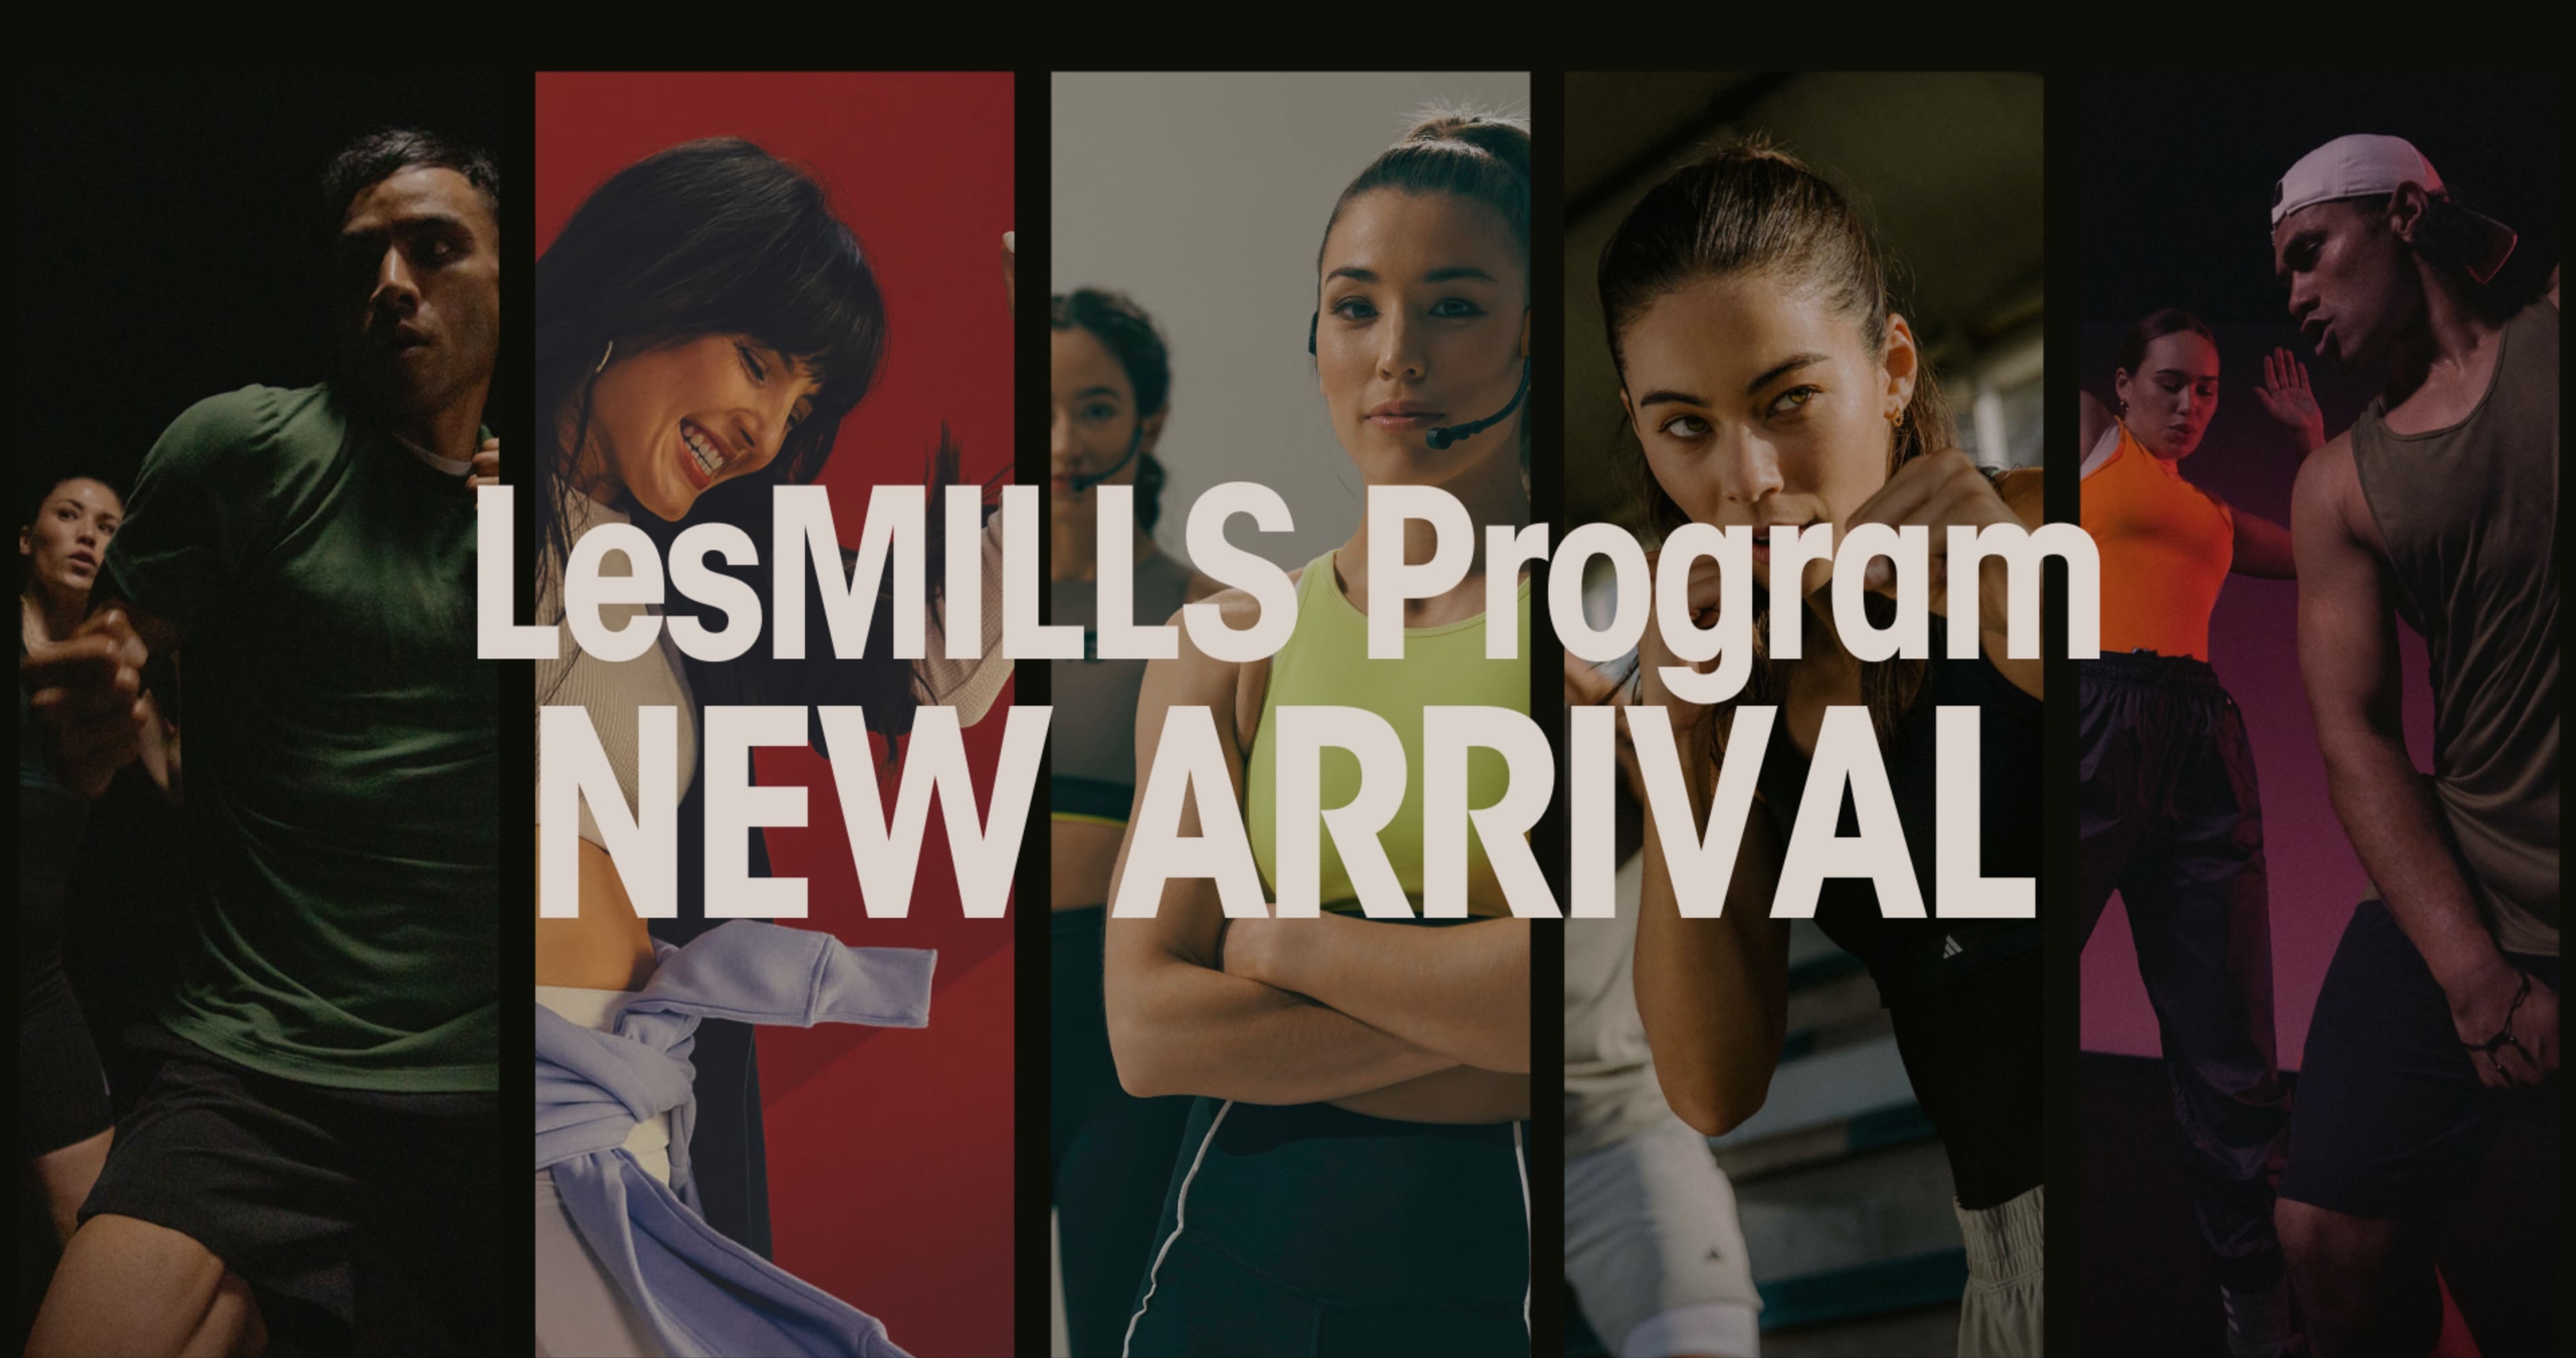 LesMILLS Program NEW ARRIVAL